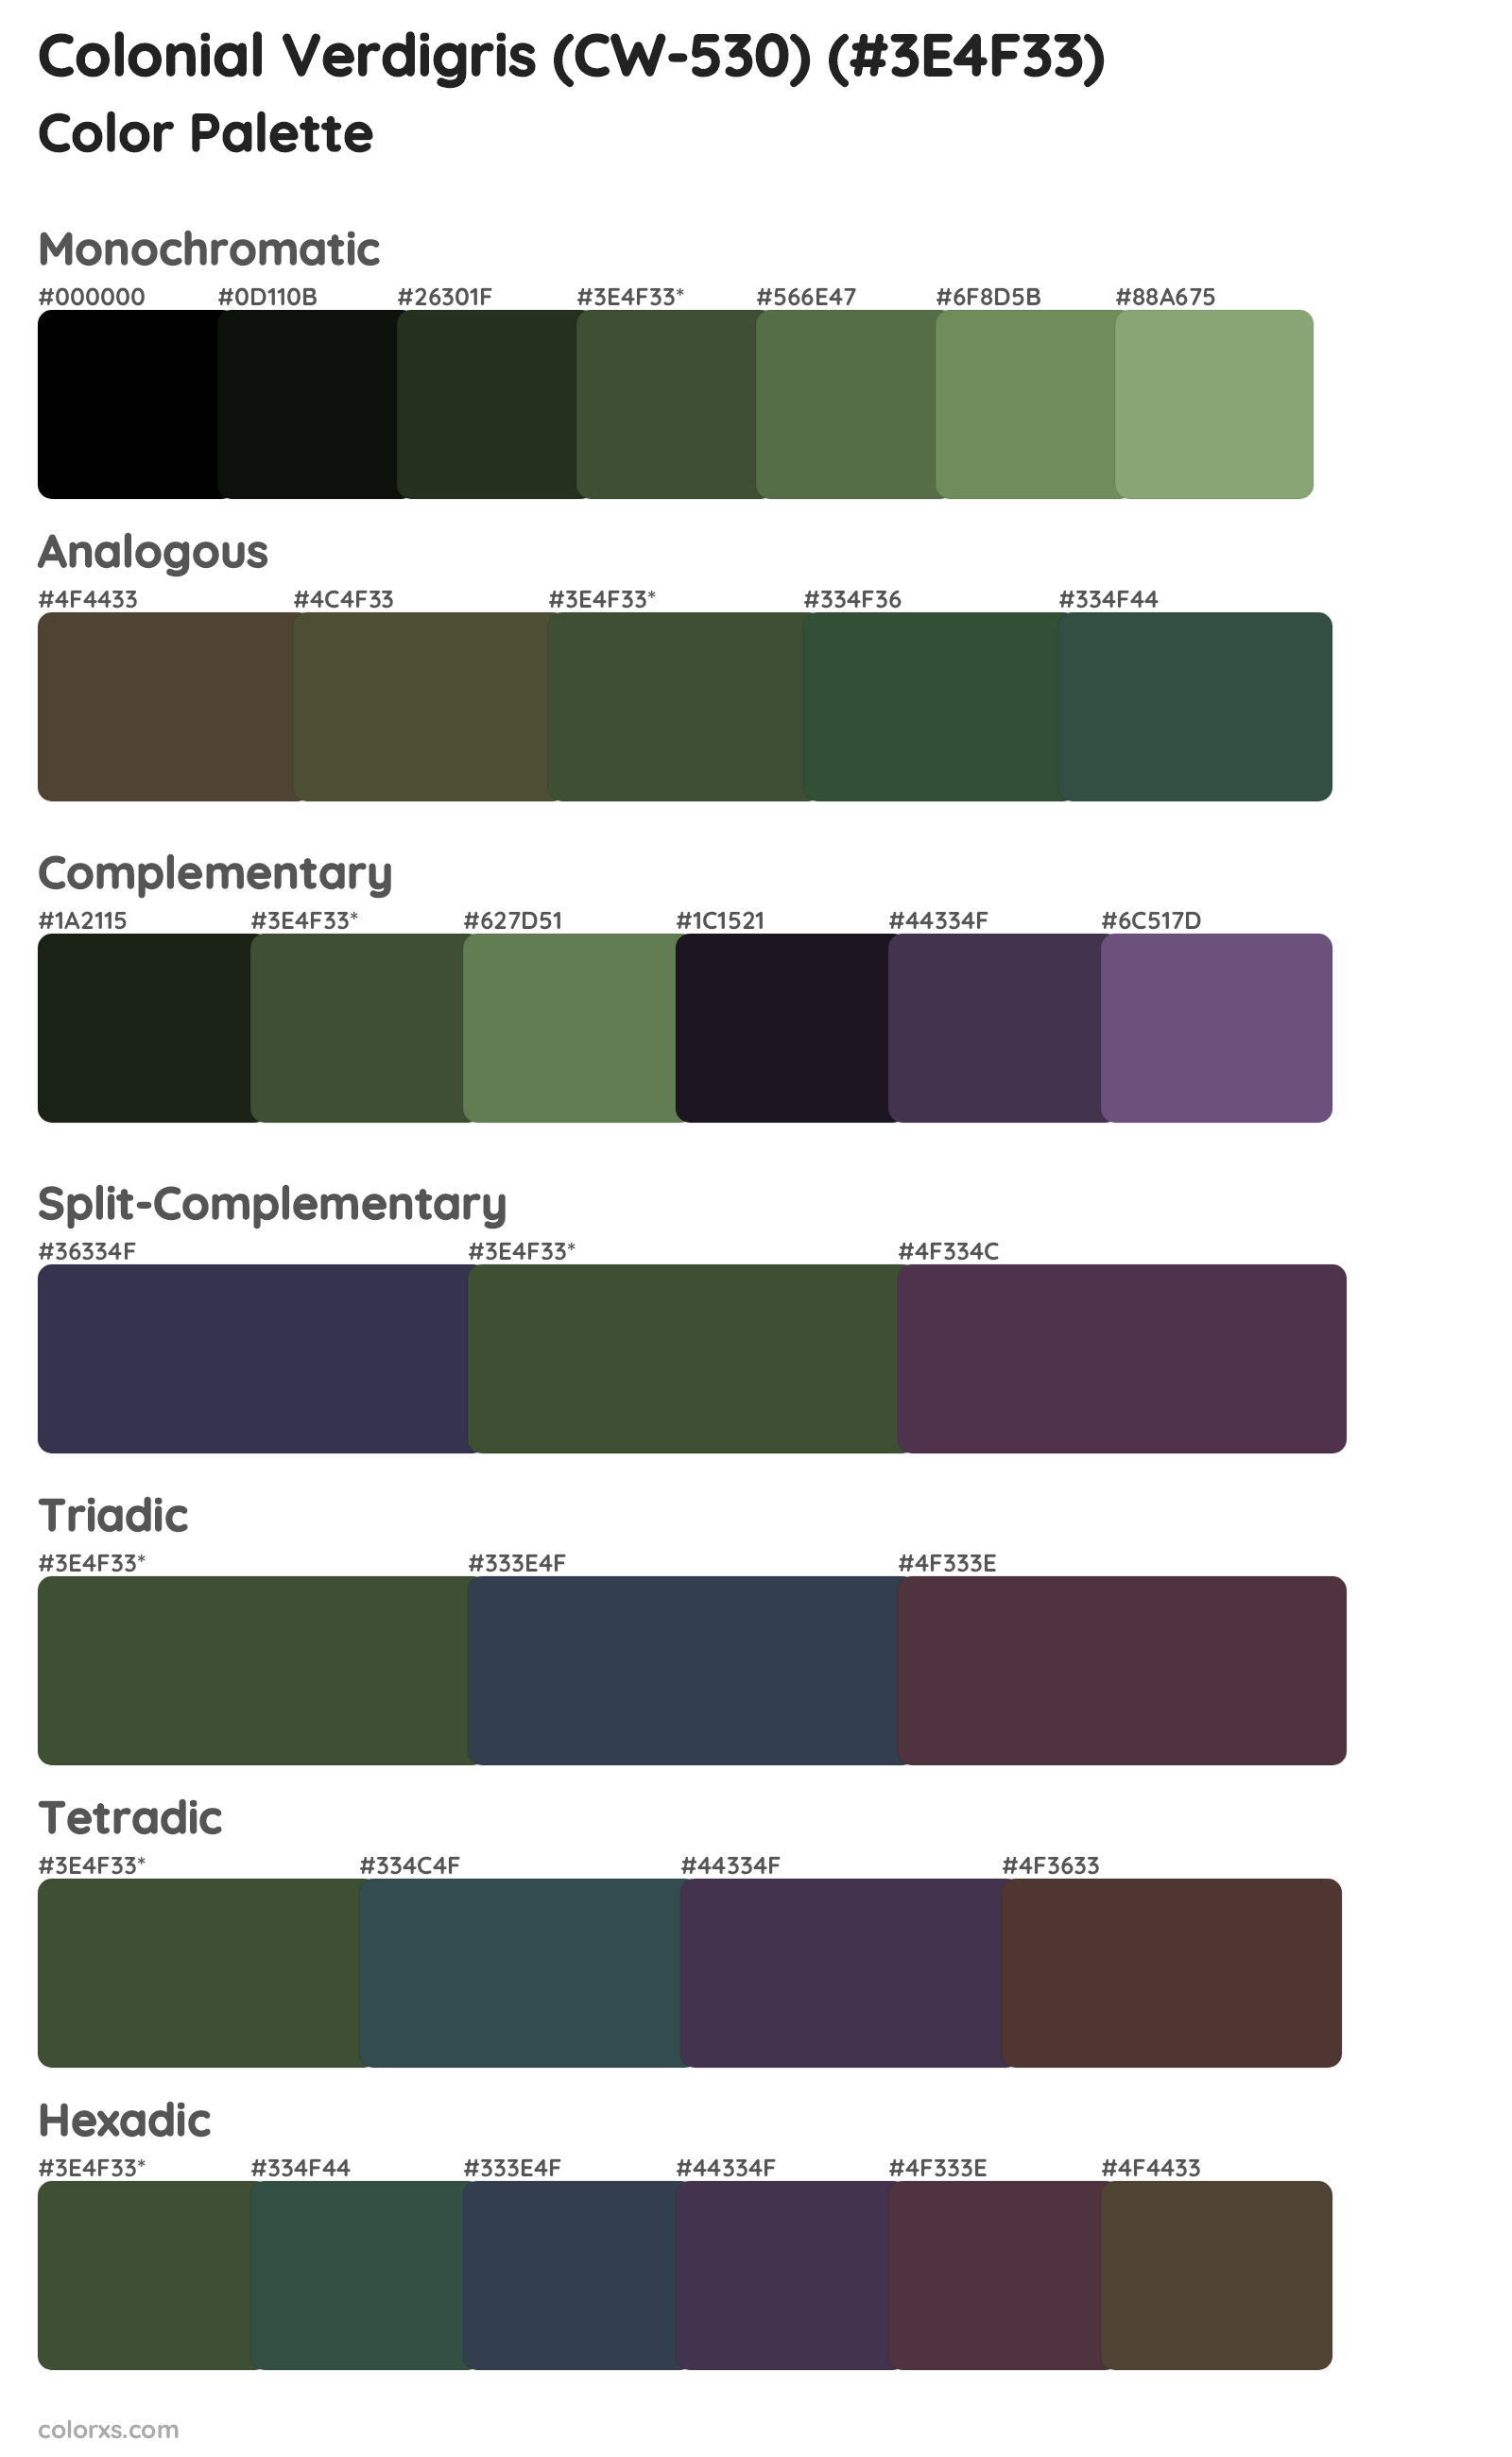 Colonial Verdigris (CW-530) Color Scheme Palettes